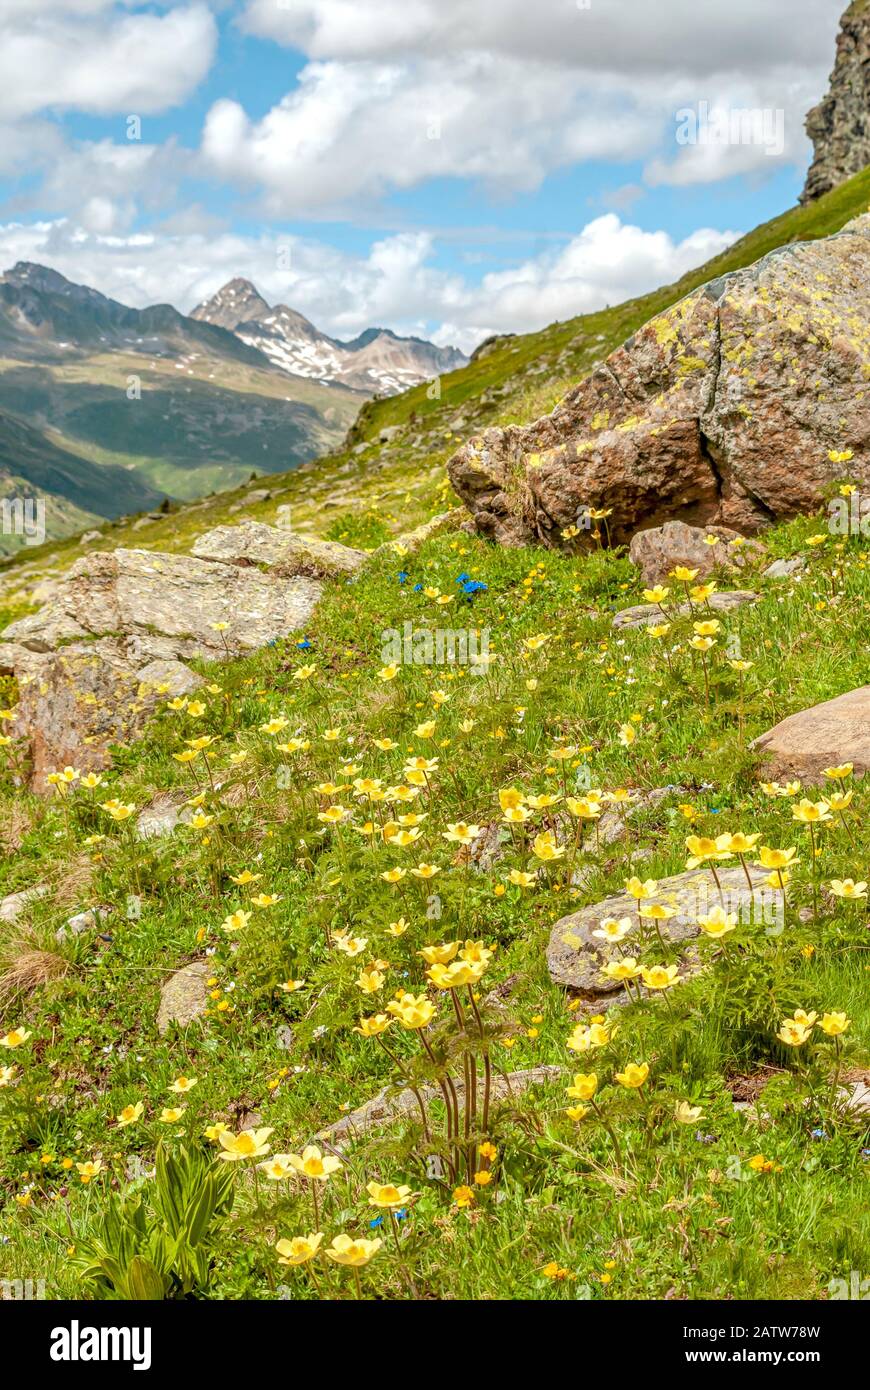 Prato alpino con radice gialla di chiodi di garofano fiori selvatici nelle Alpi svizzere, alta Engadina, Grigioni, Svizzera Foto Stock